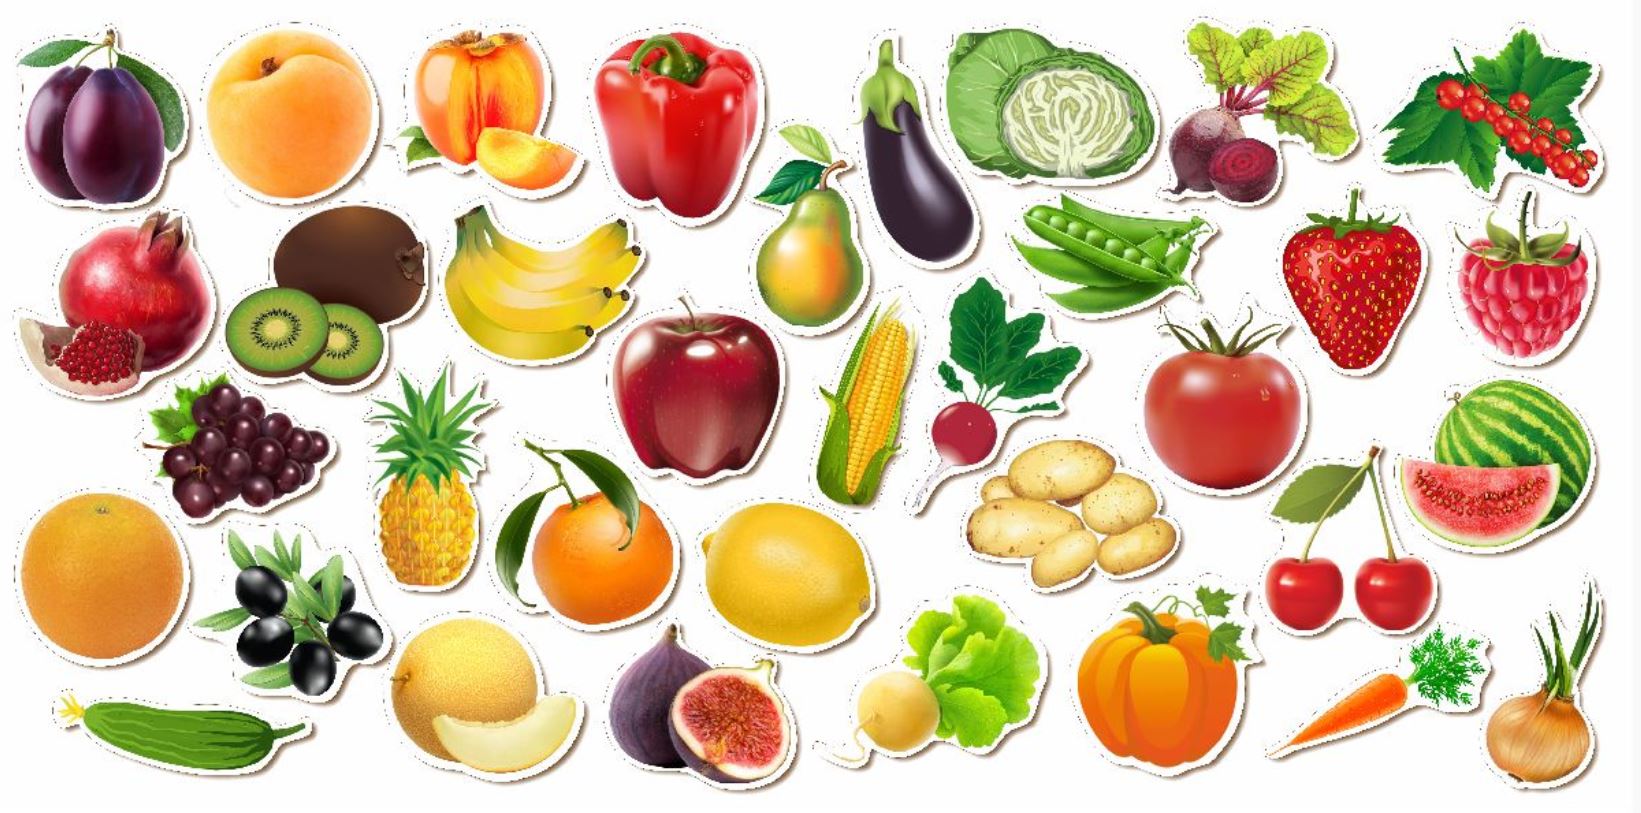 Овощи и фрукты для детей